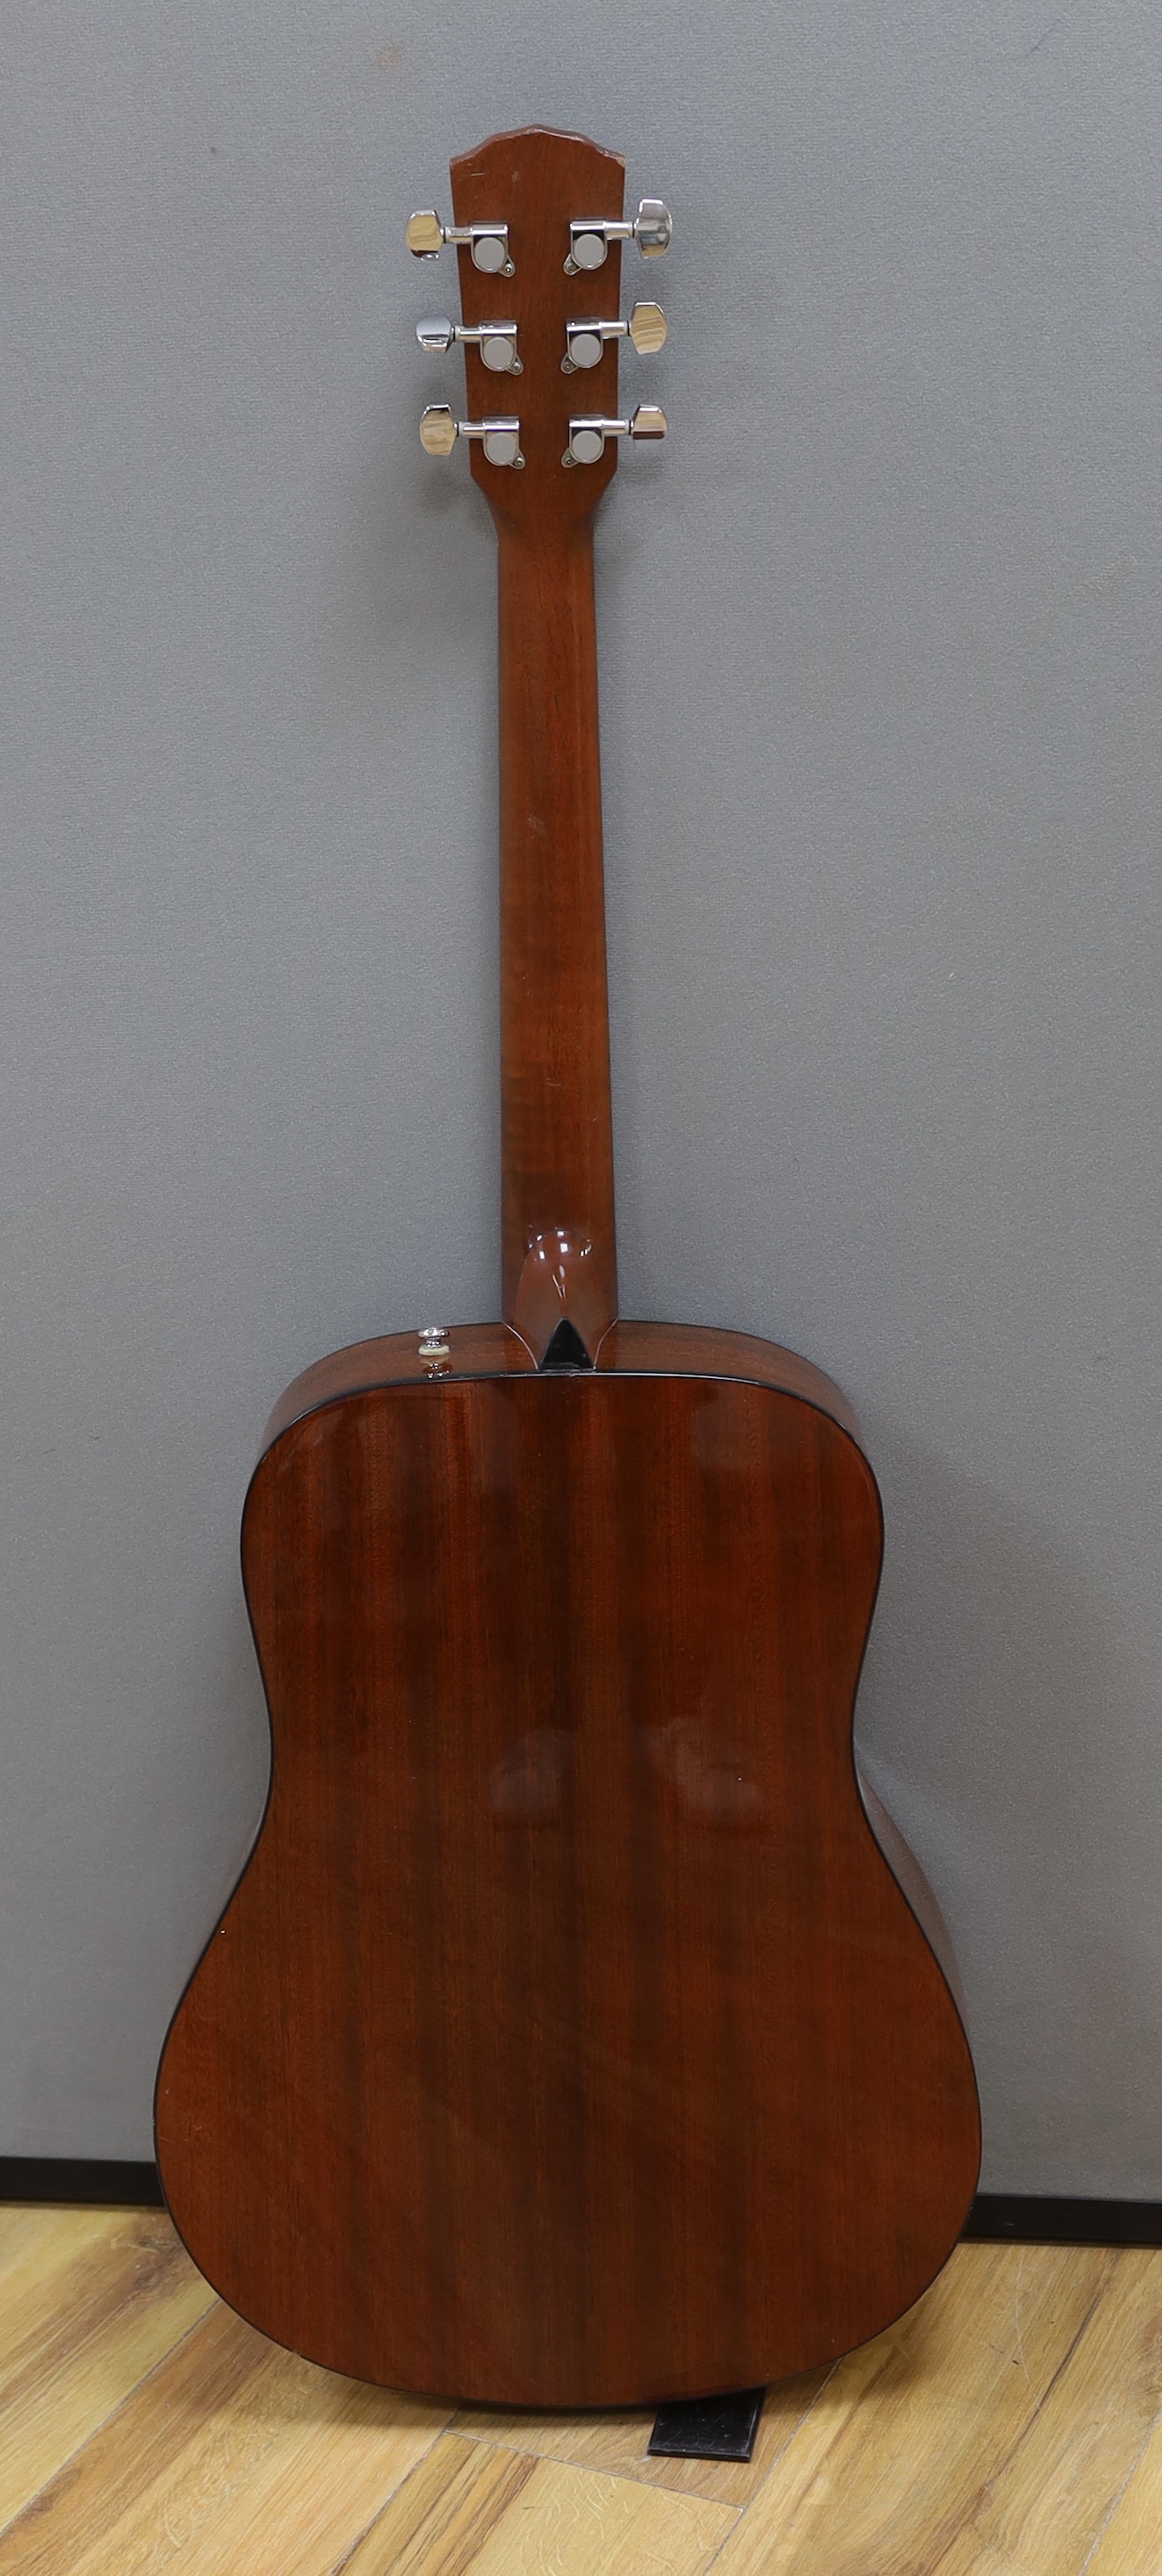 A Fender acoustic left handed guitar, in case